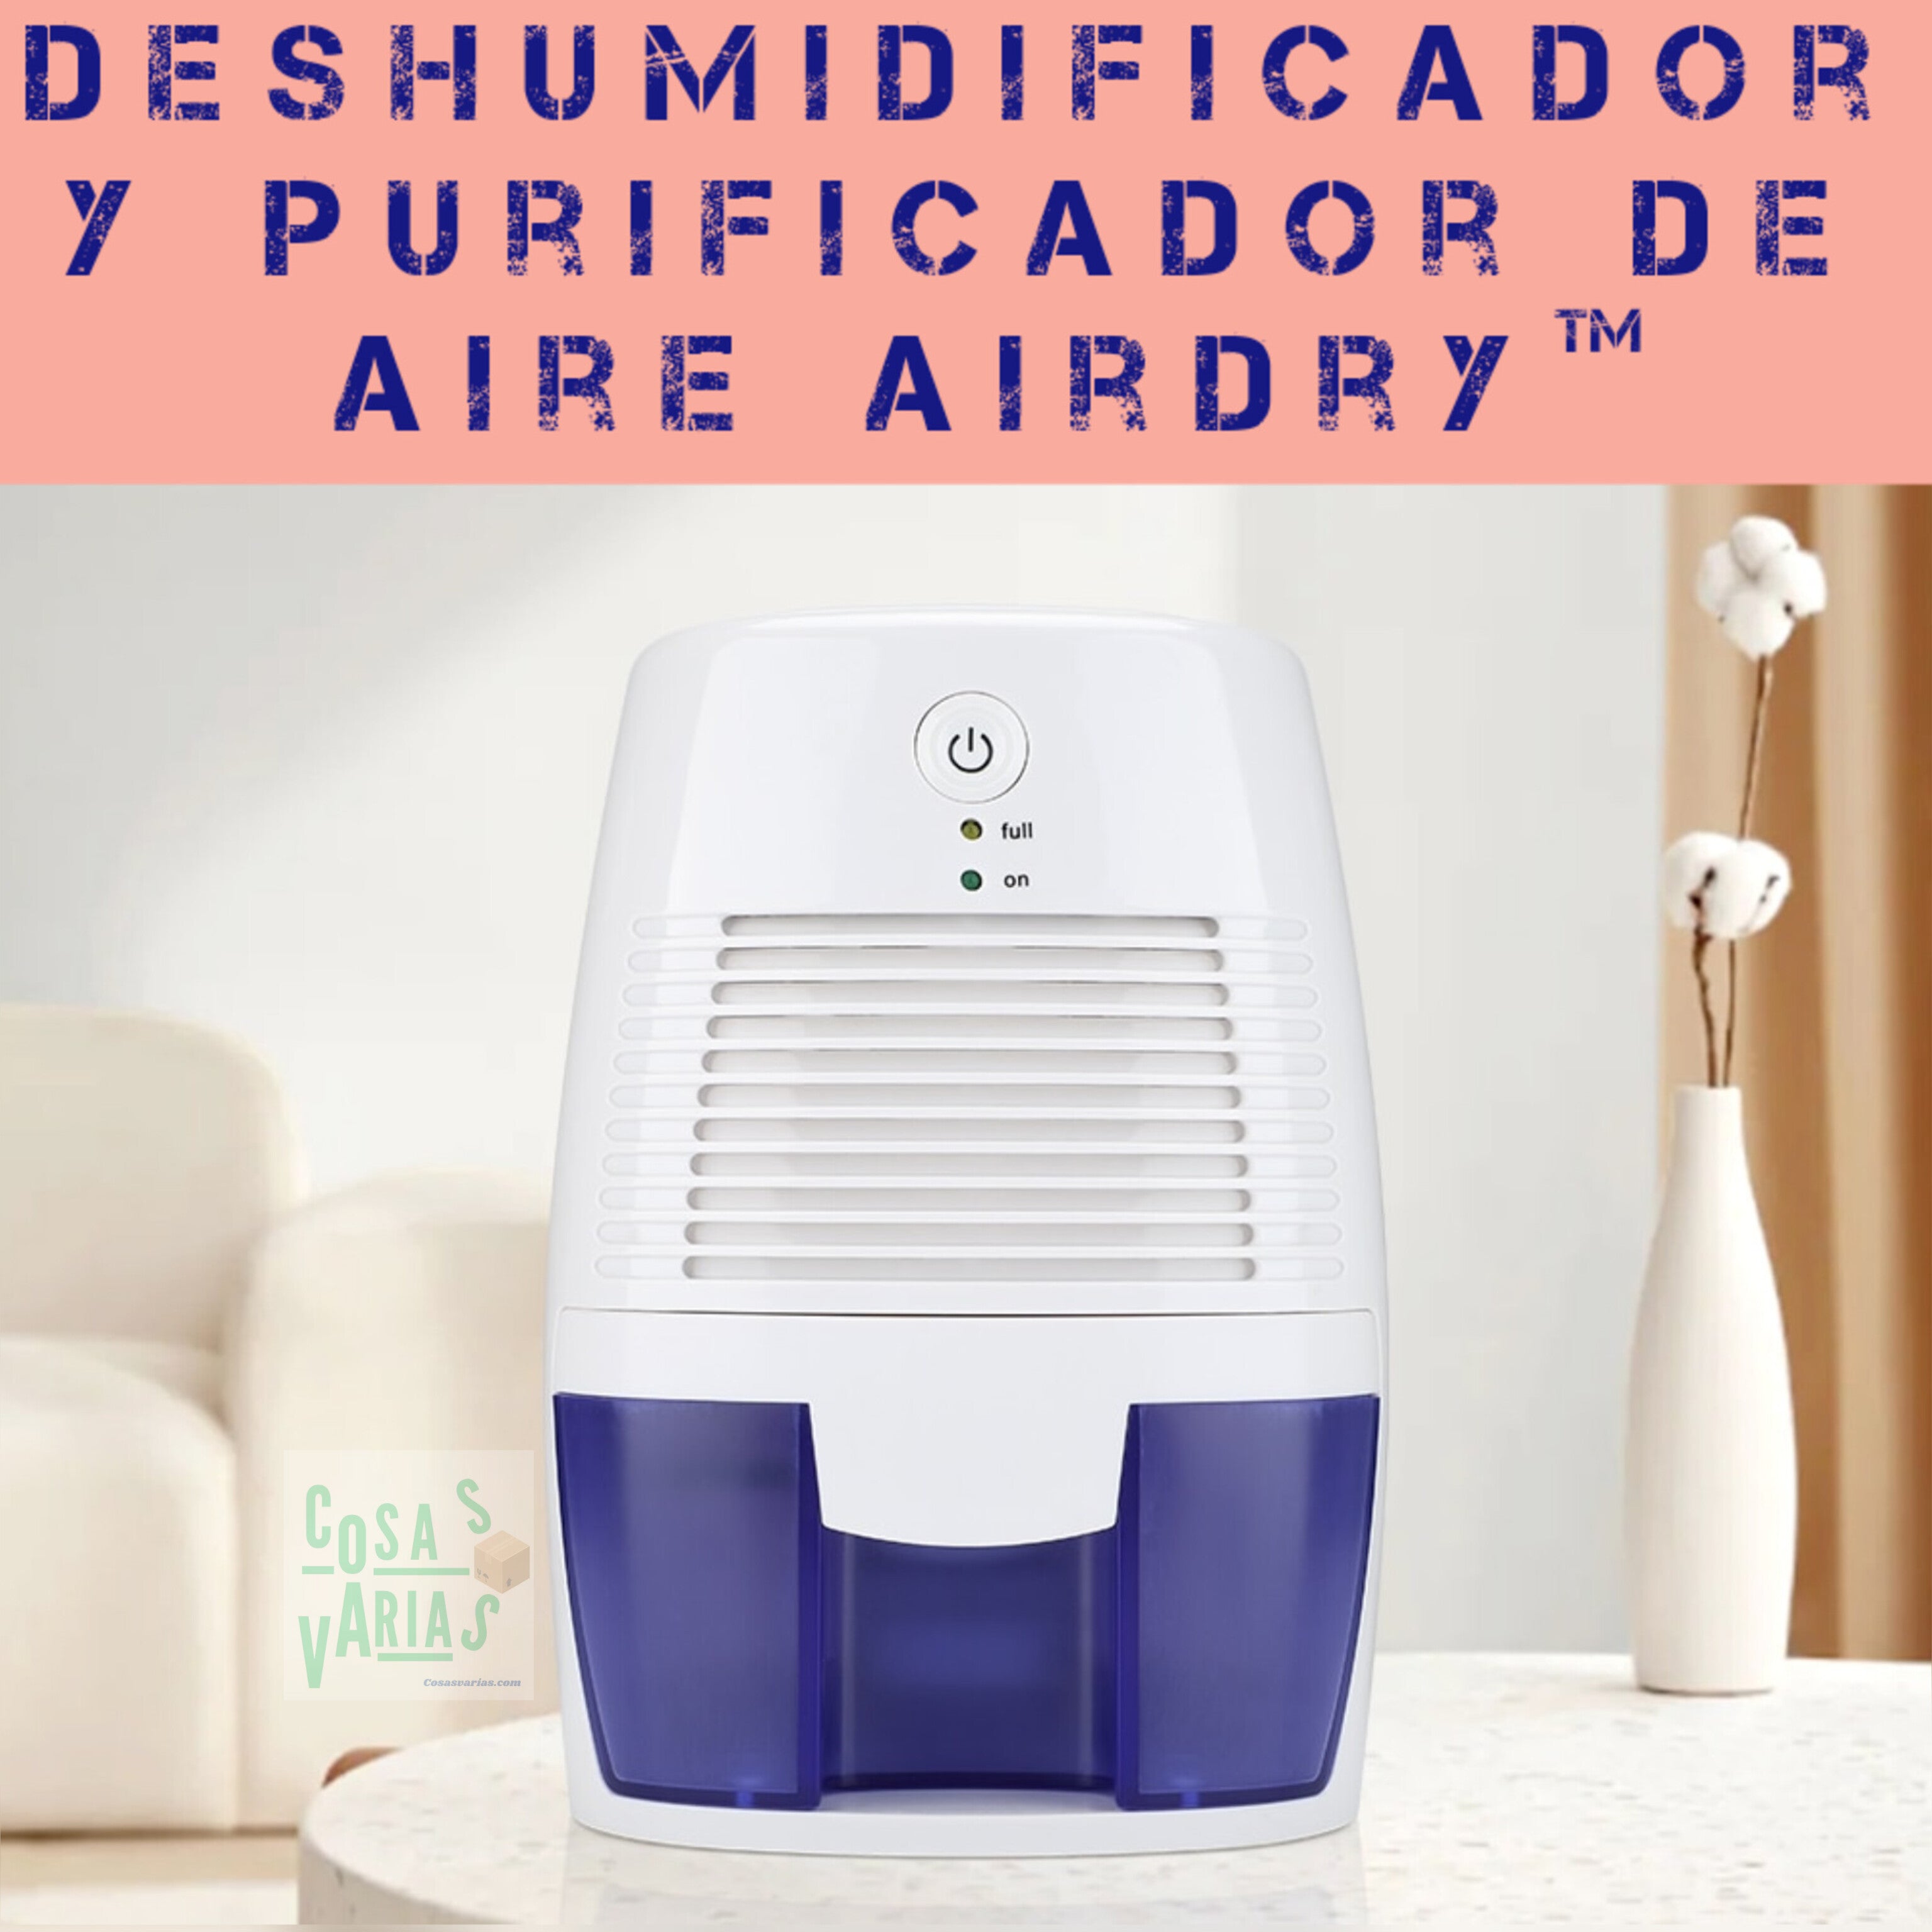 Deshumidificador y purificador de aire AirDry™